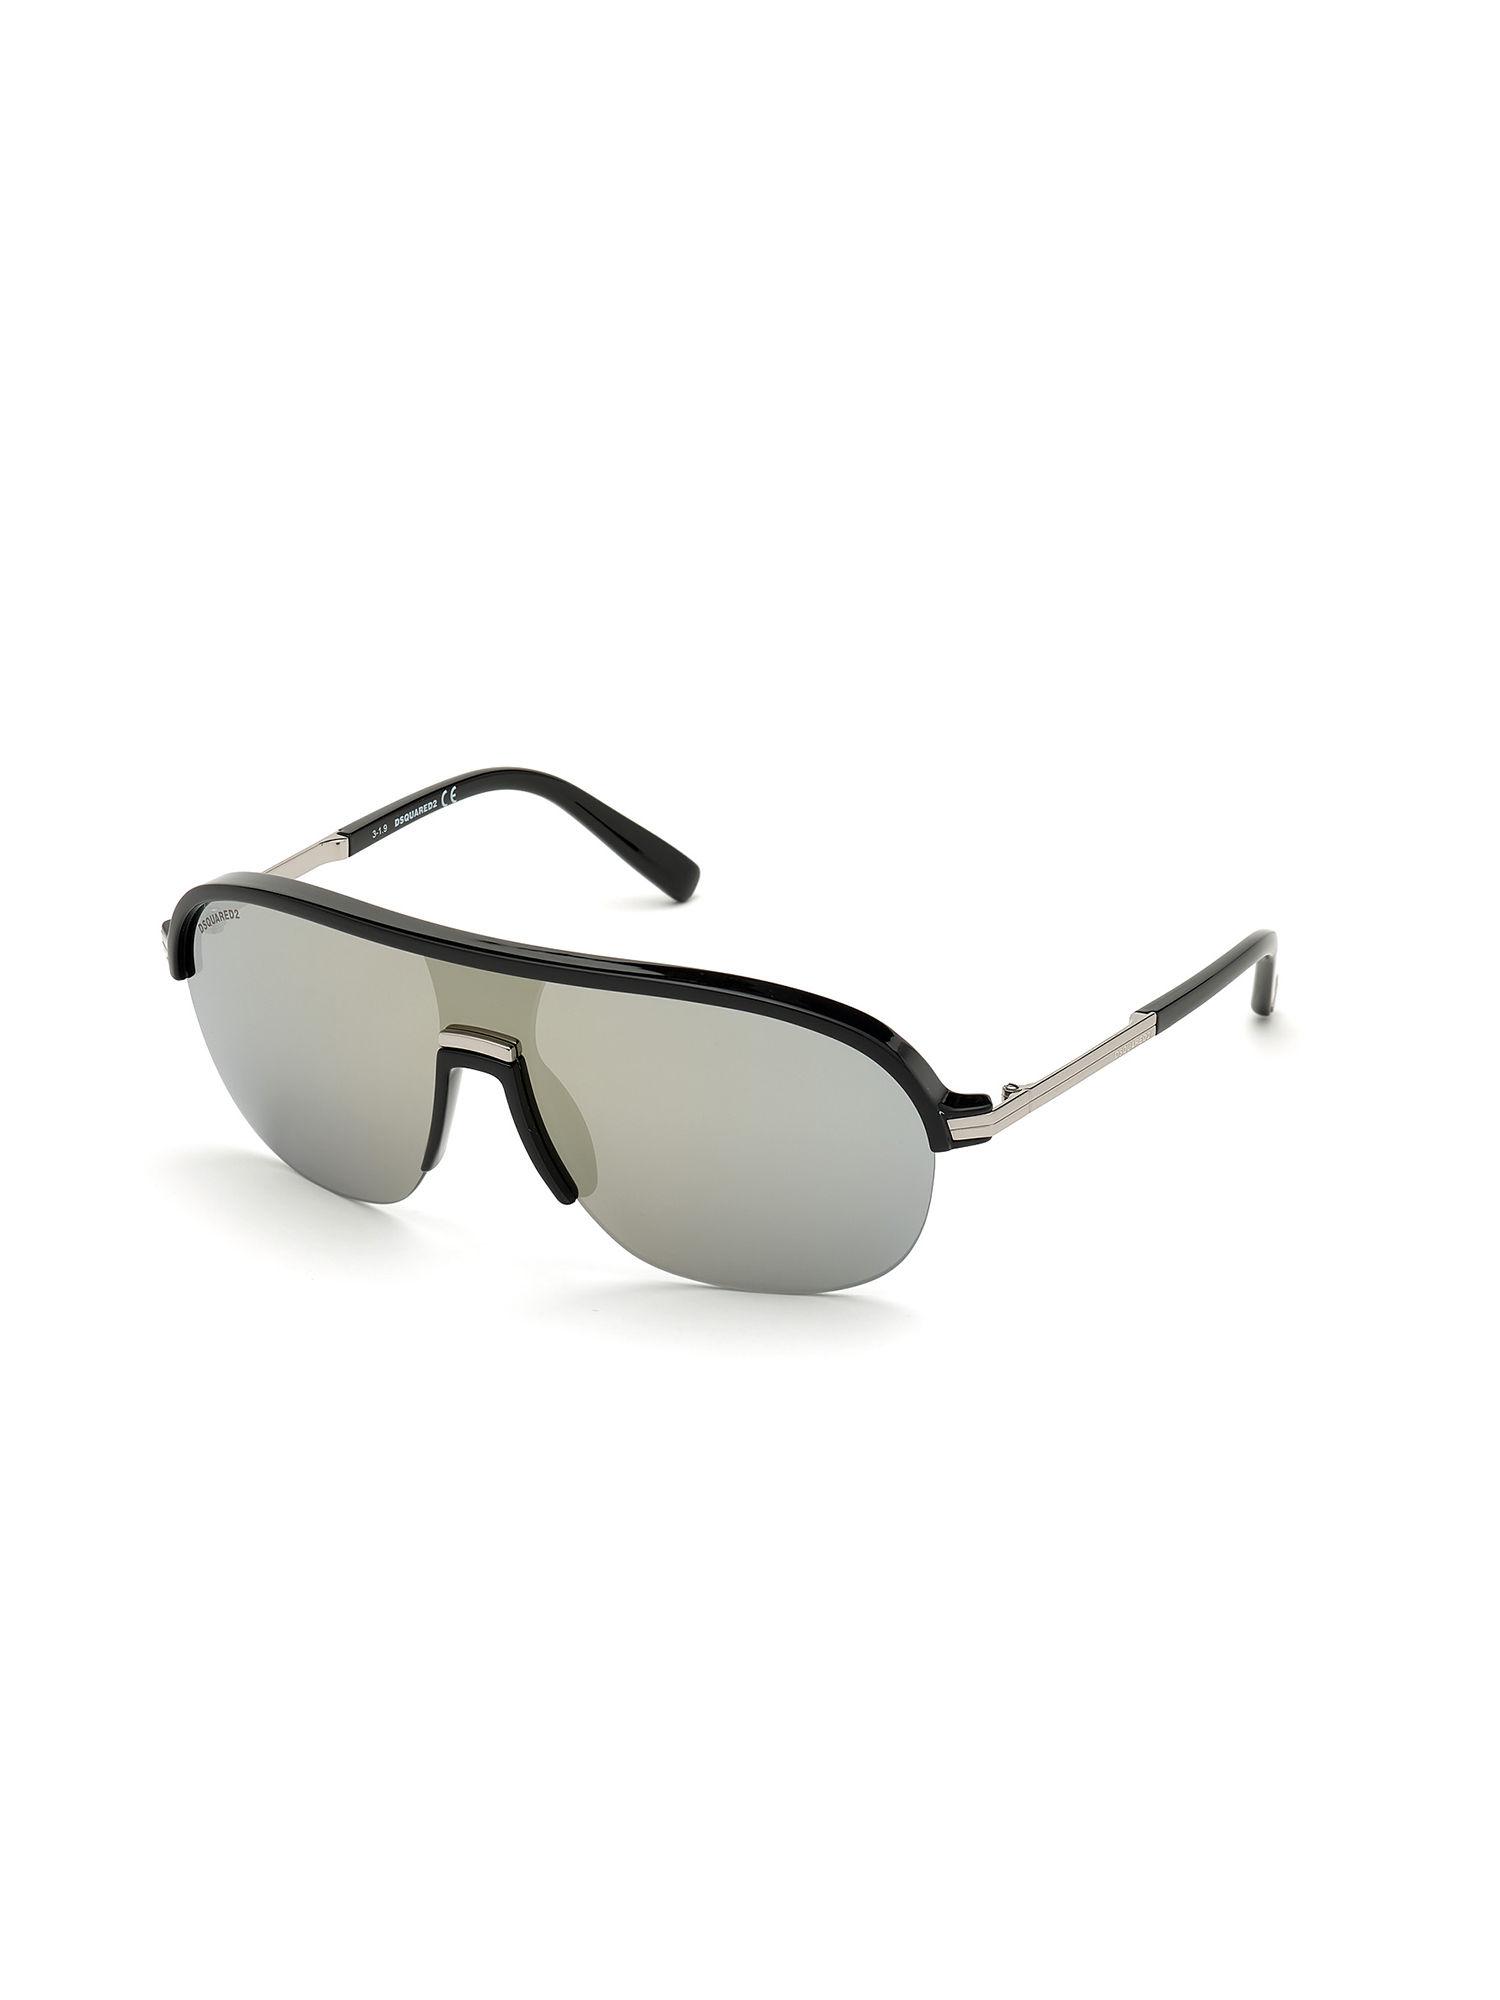 black plastic sunglasses dq0344 00 01c